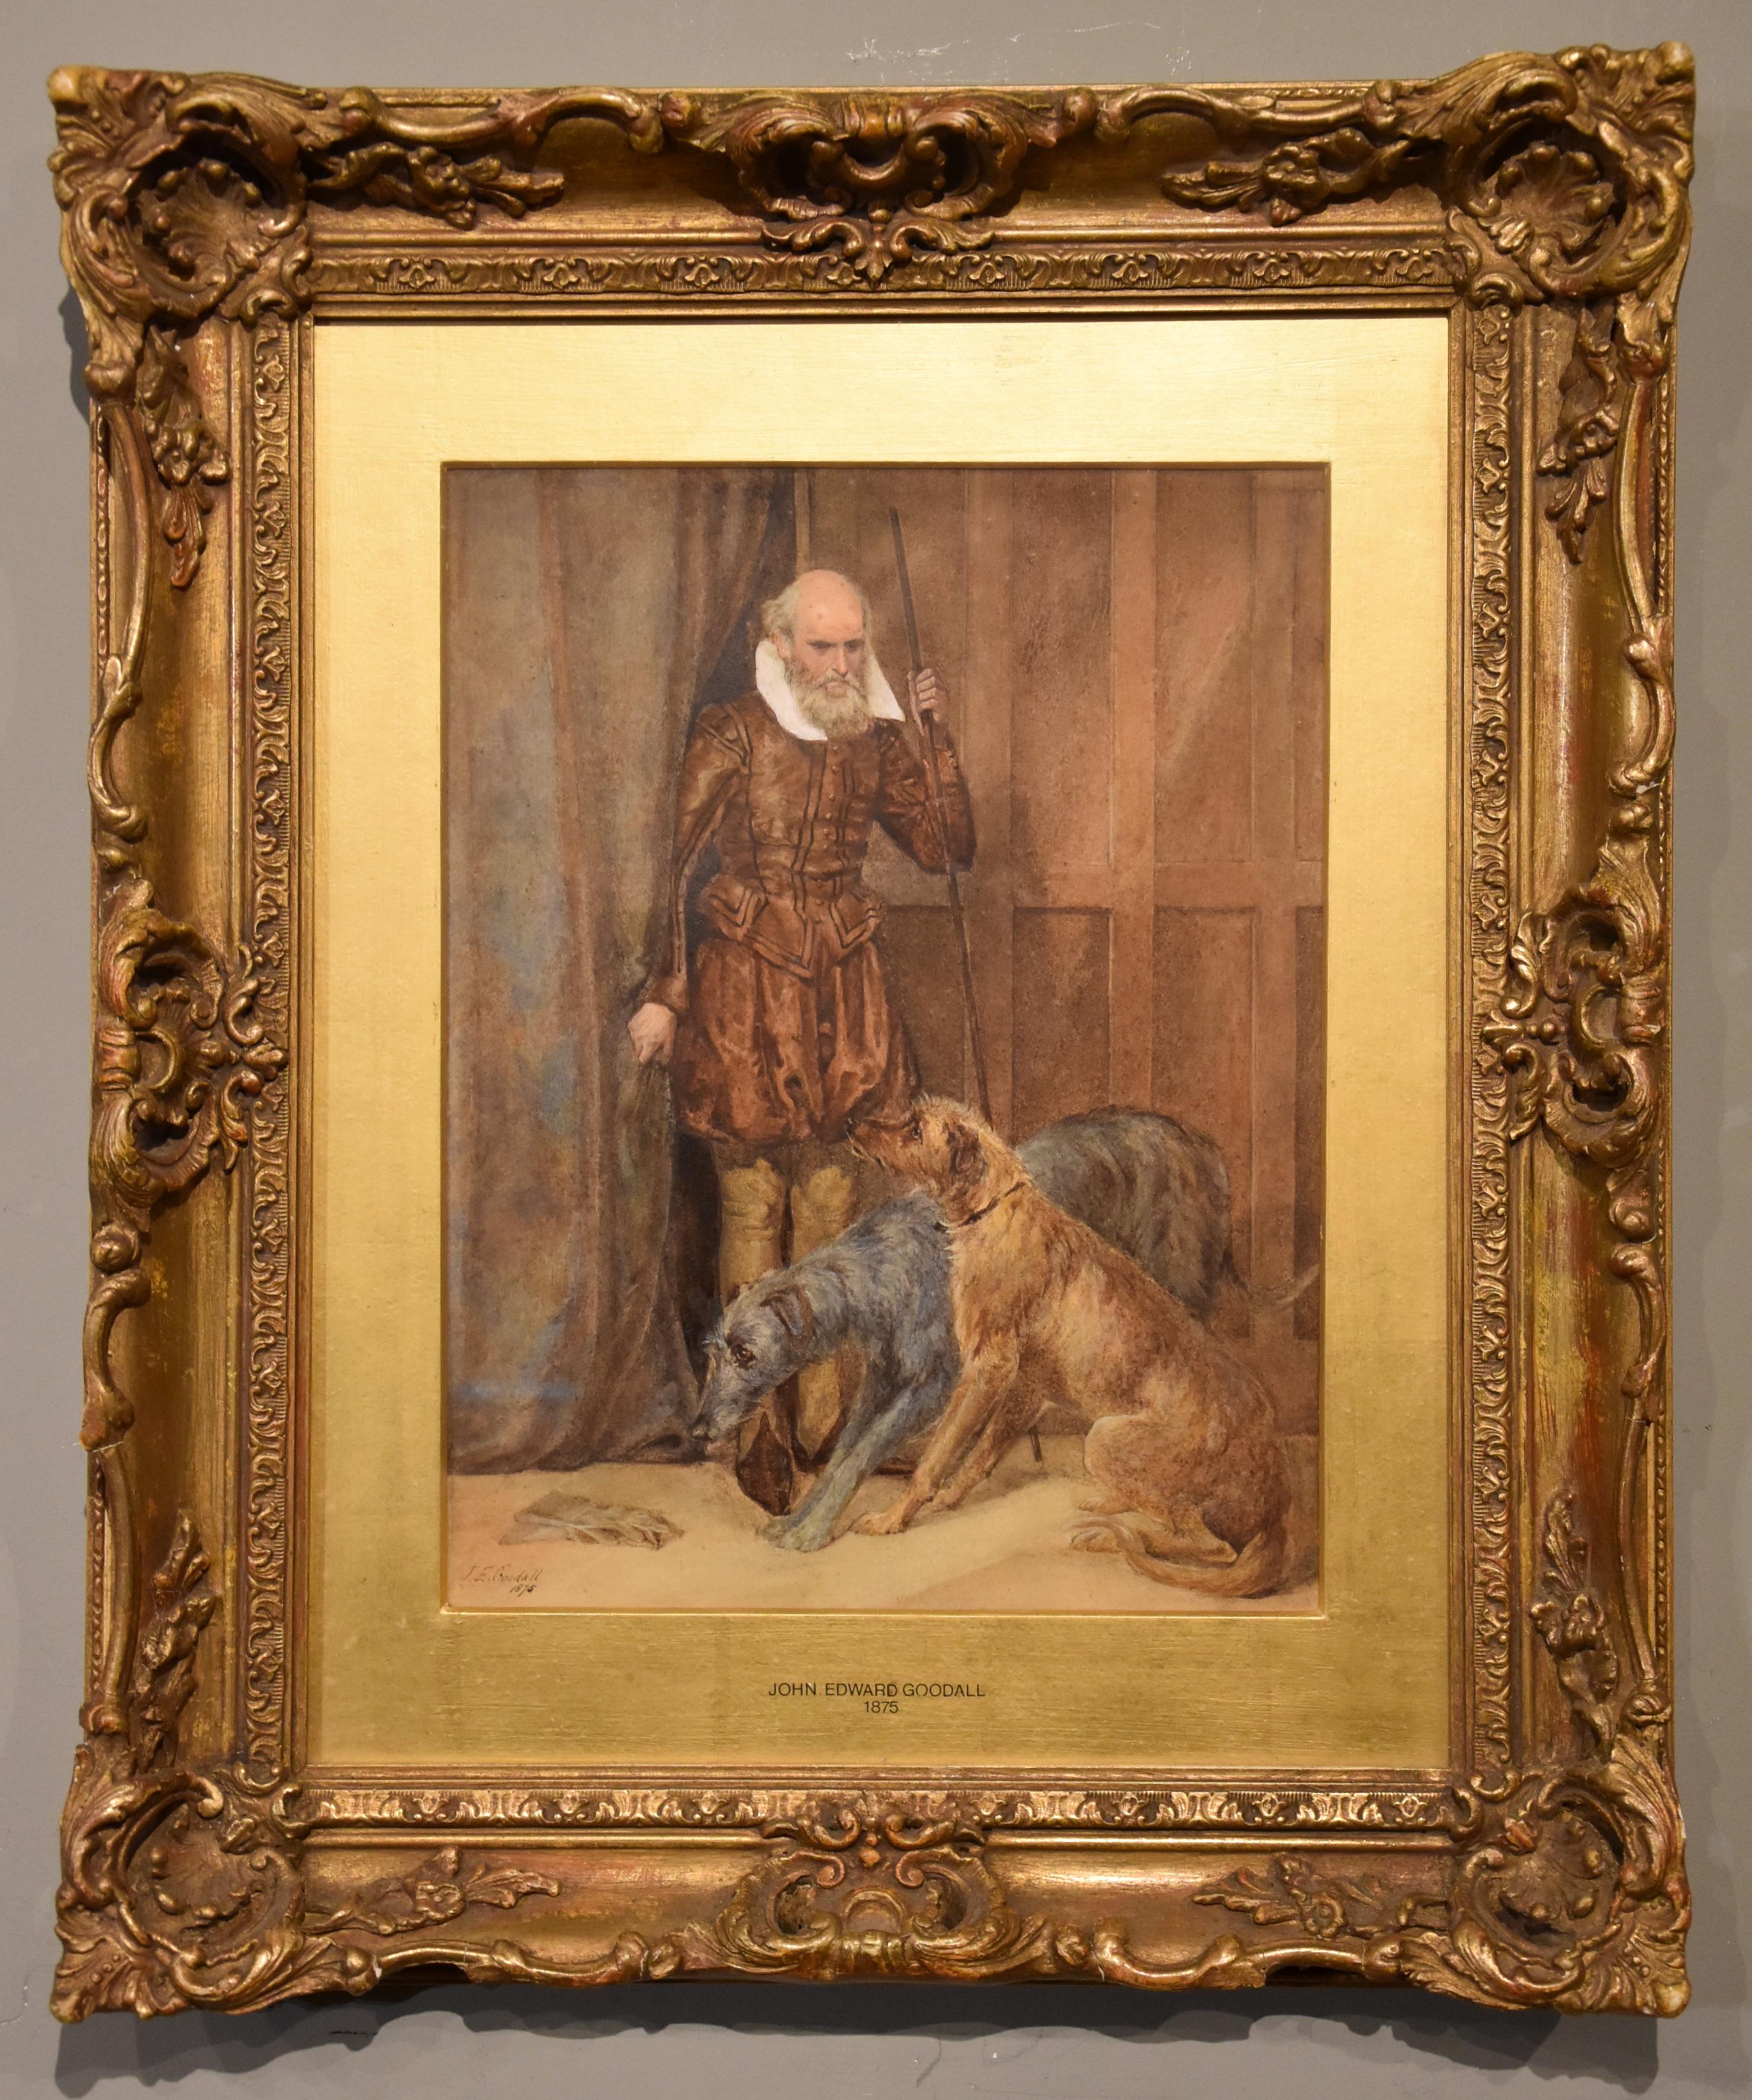 Aquarell von John Edward Goodall "The Keeper of the Hounds" 1875 -1901 John war ein Londoner Maler historischer und rustikaler figurativer Szenen, der 15 Werke in der Royal Society und 7 in der Royal Academy ausstellte. Aquarell signiert und datiert